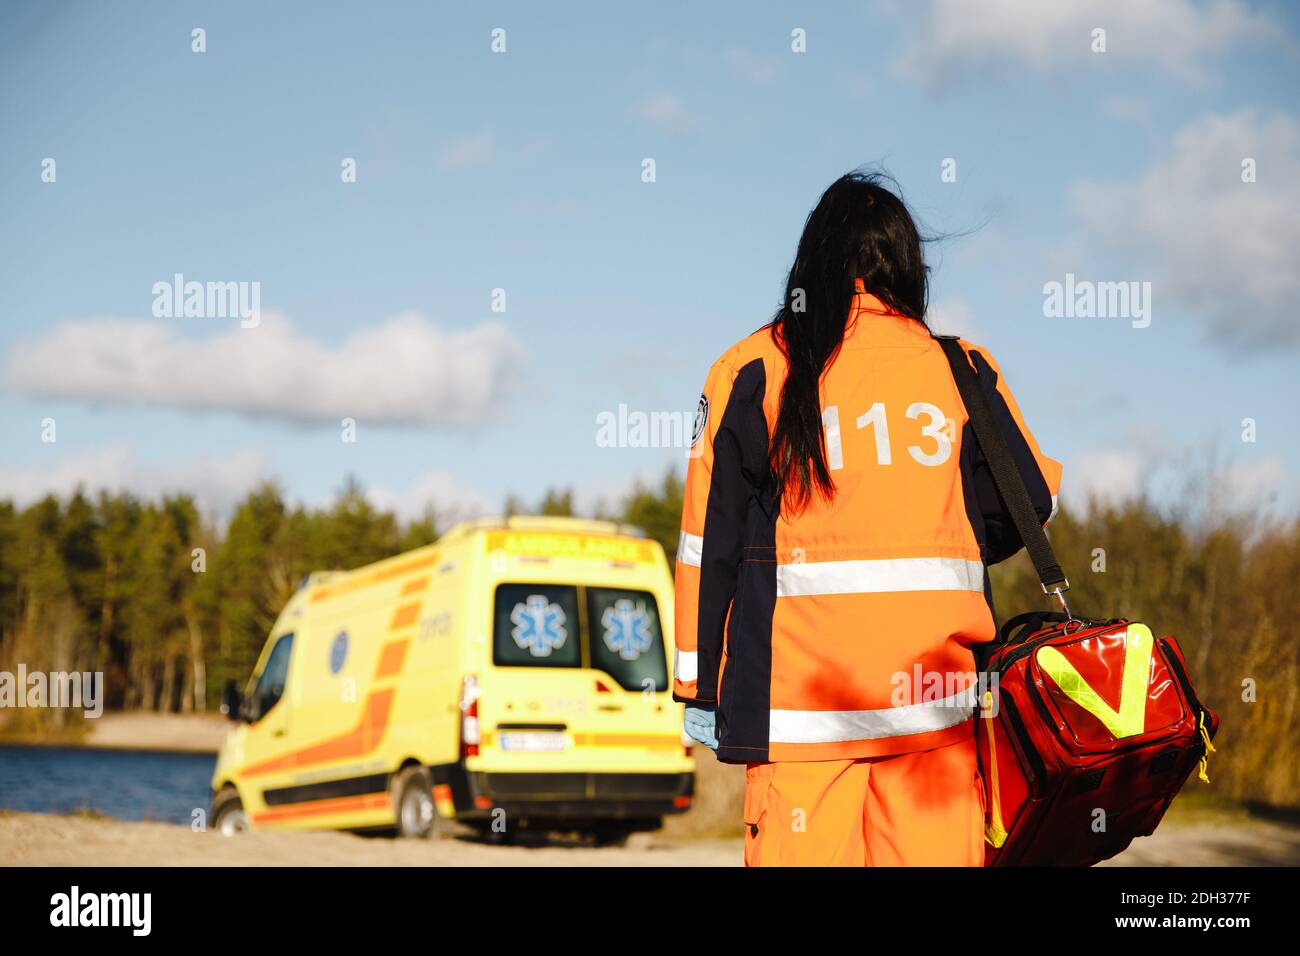 Female paramedic's epic walk towards ambulanca Stock Photo